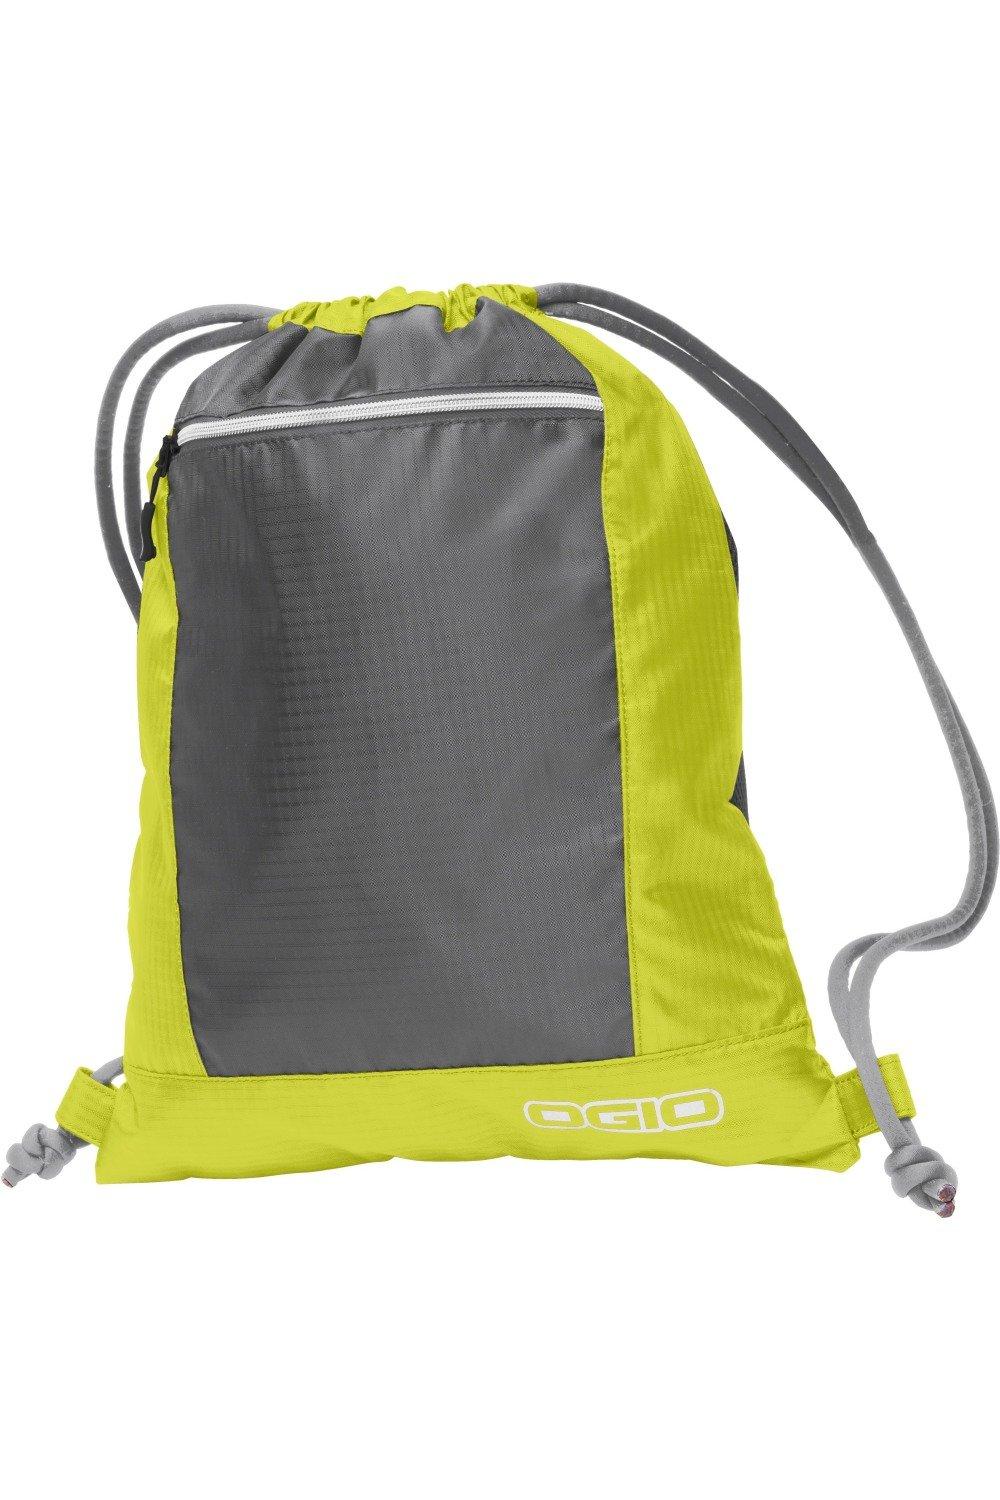 Сумка Endurance Pulse на шнурке (2 шт.) Ogio, желтый сумка endurance pulse на шнурке ogio синий